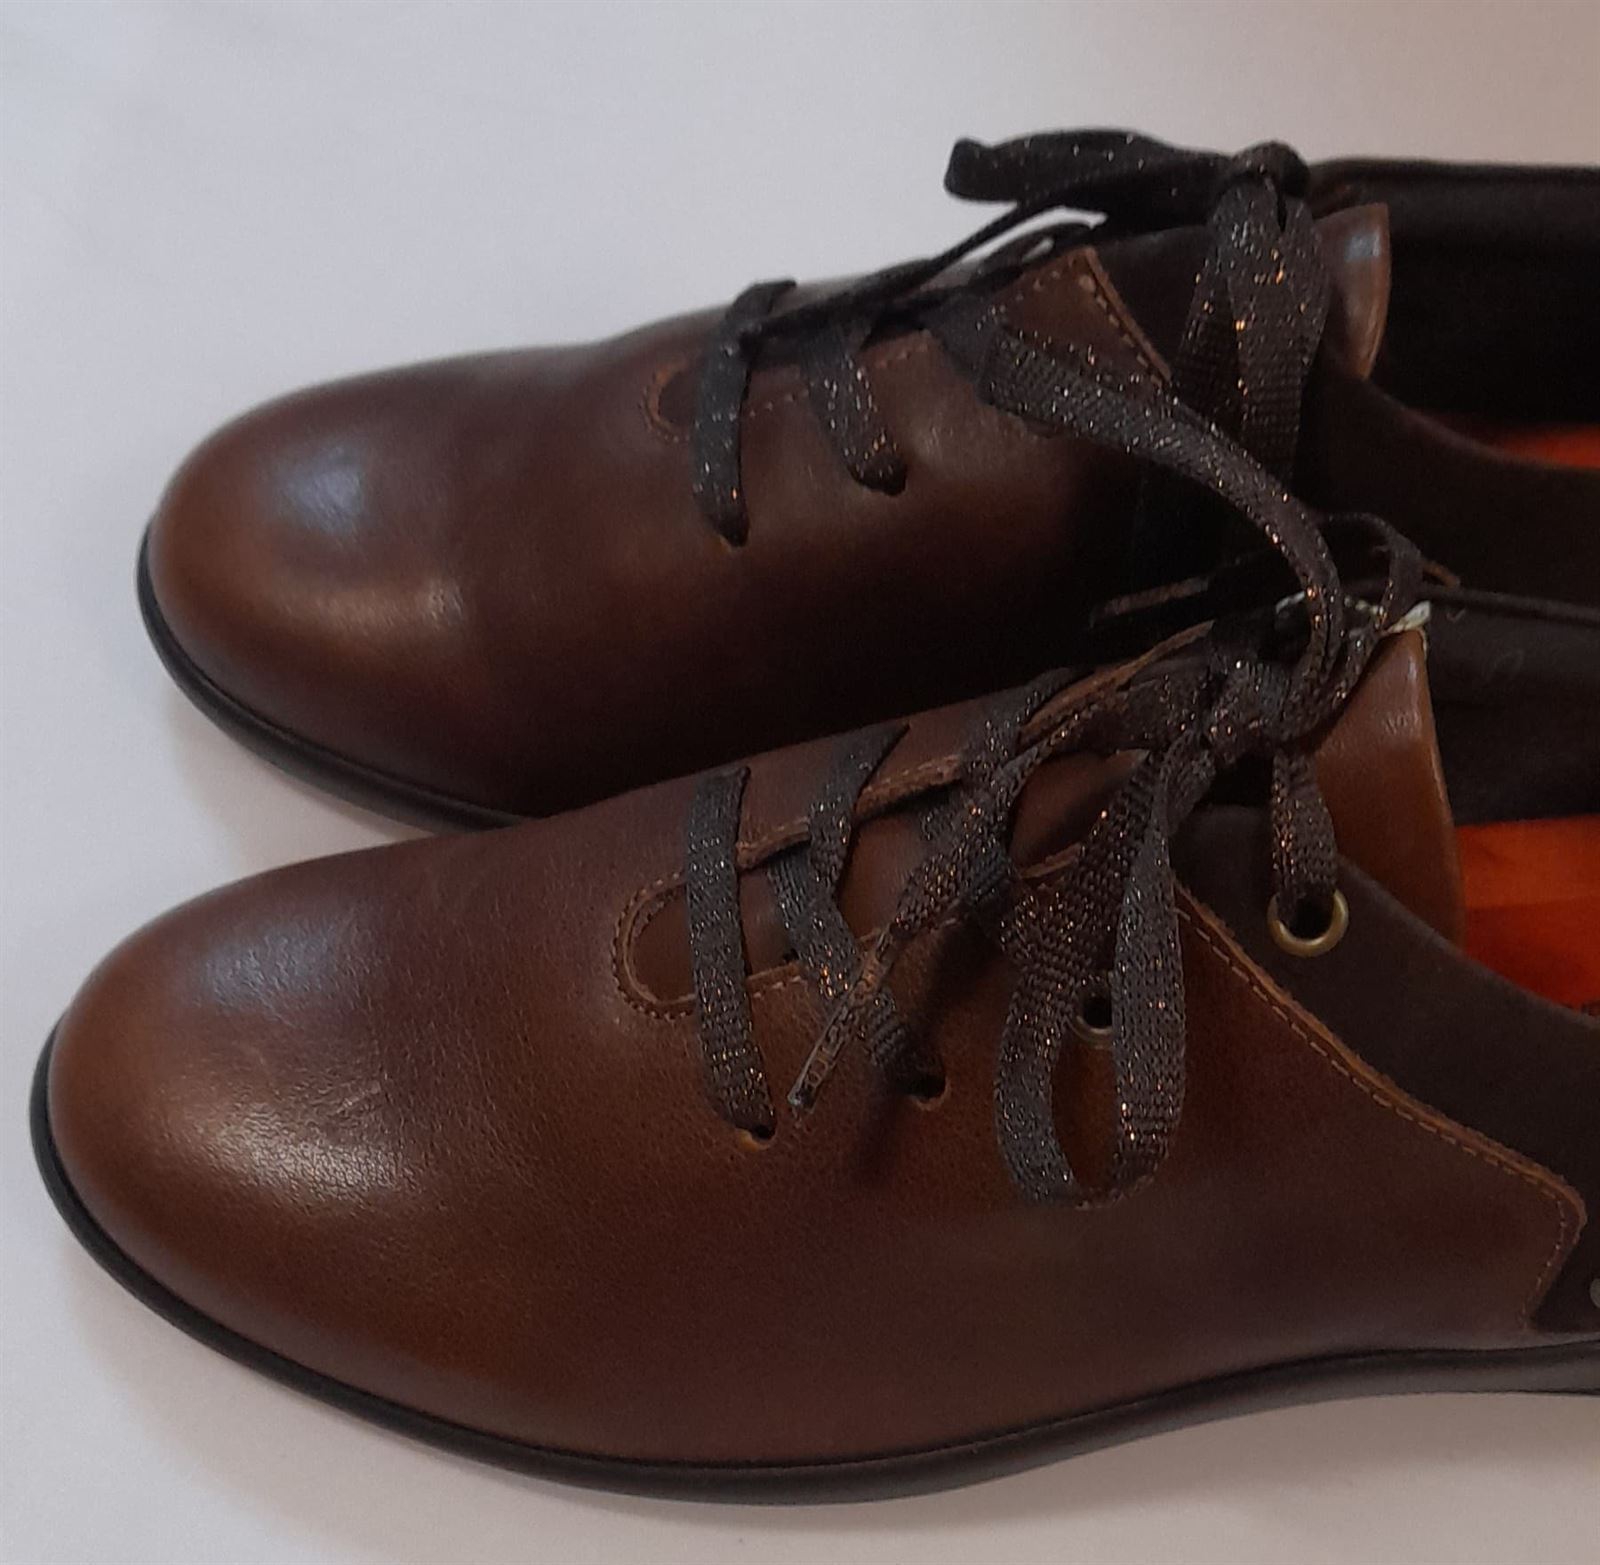 Zapato marrón cordones - Imagen 5